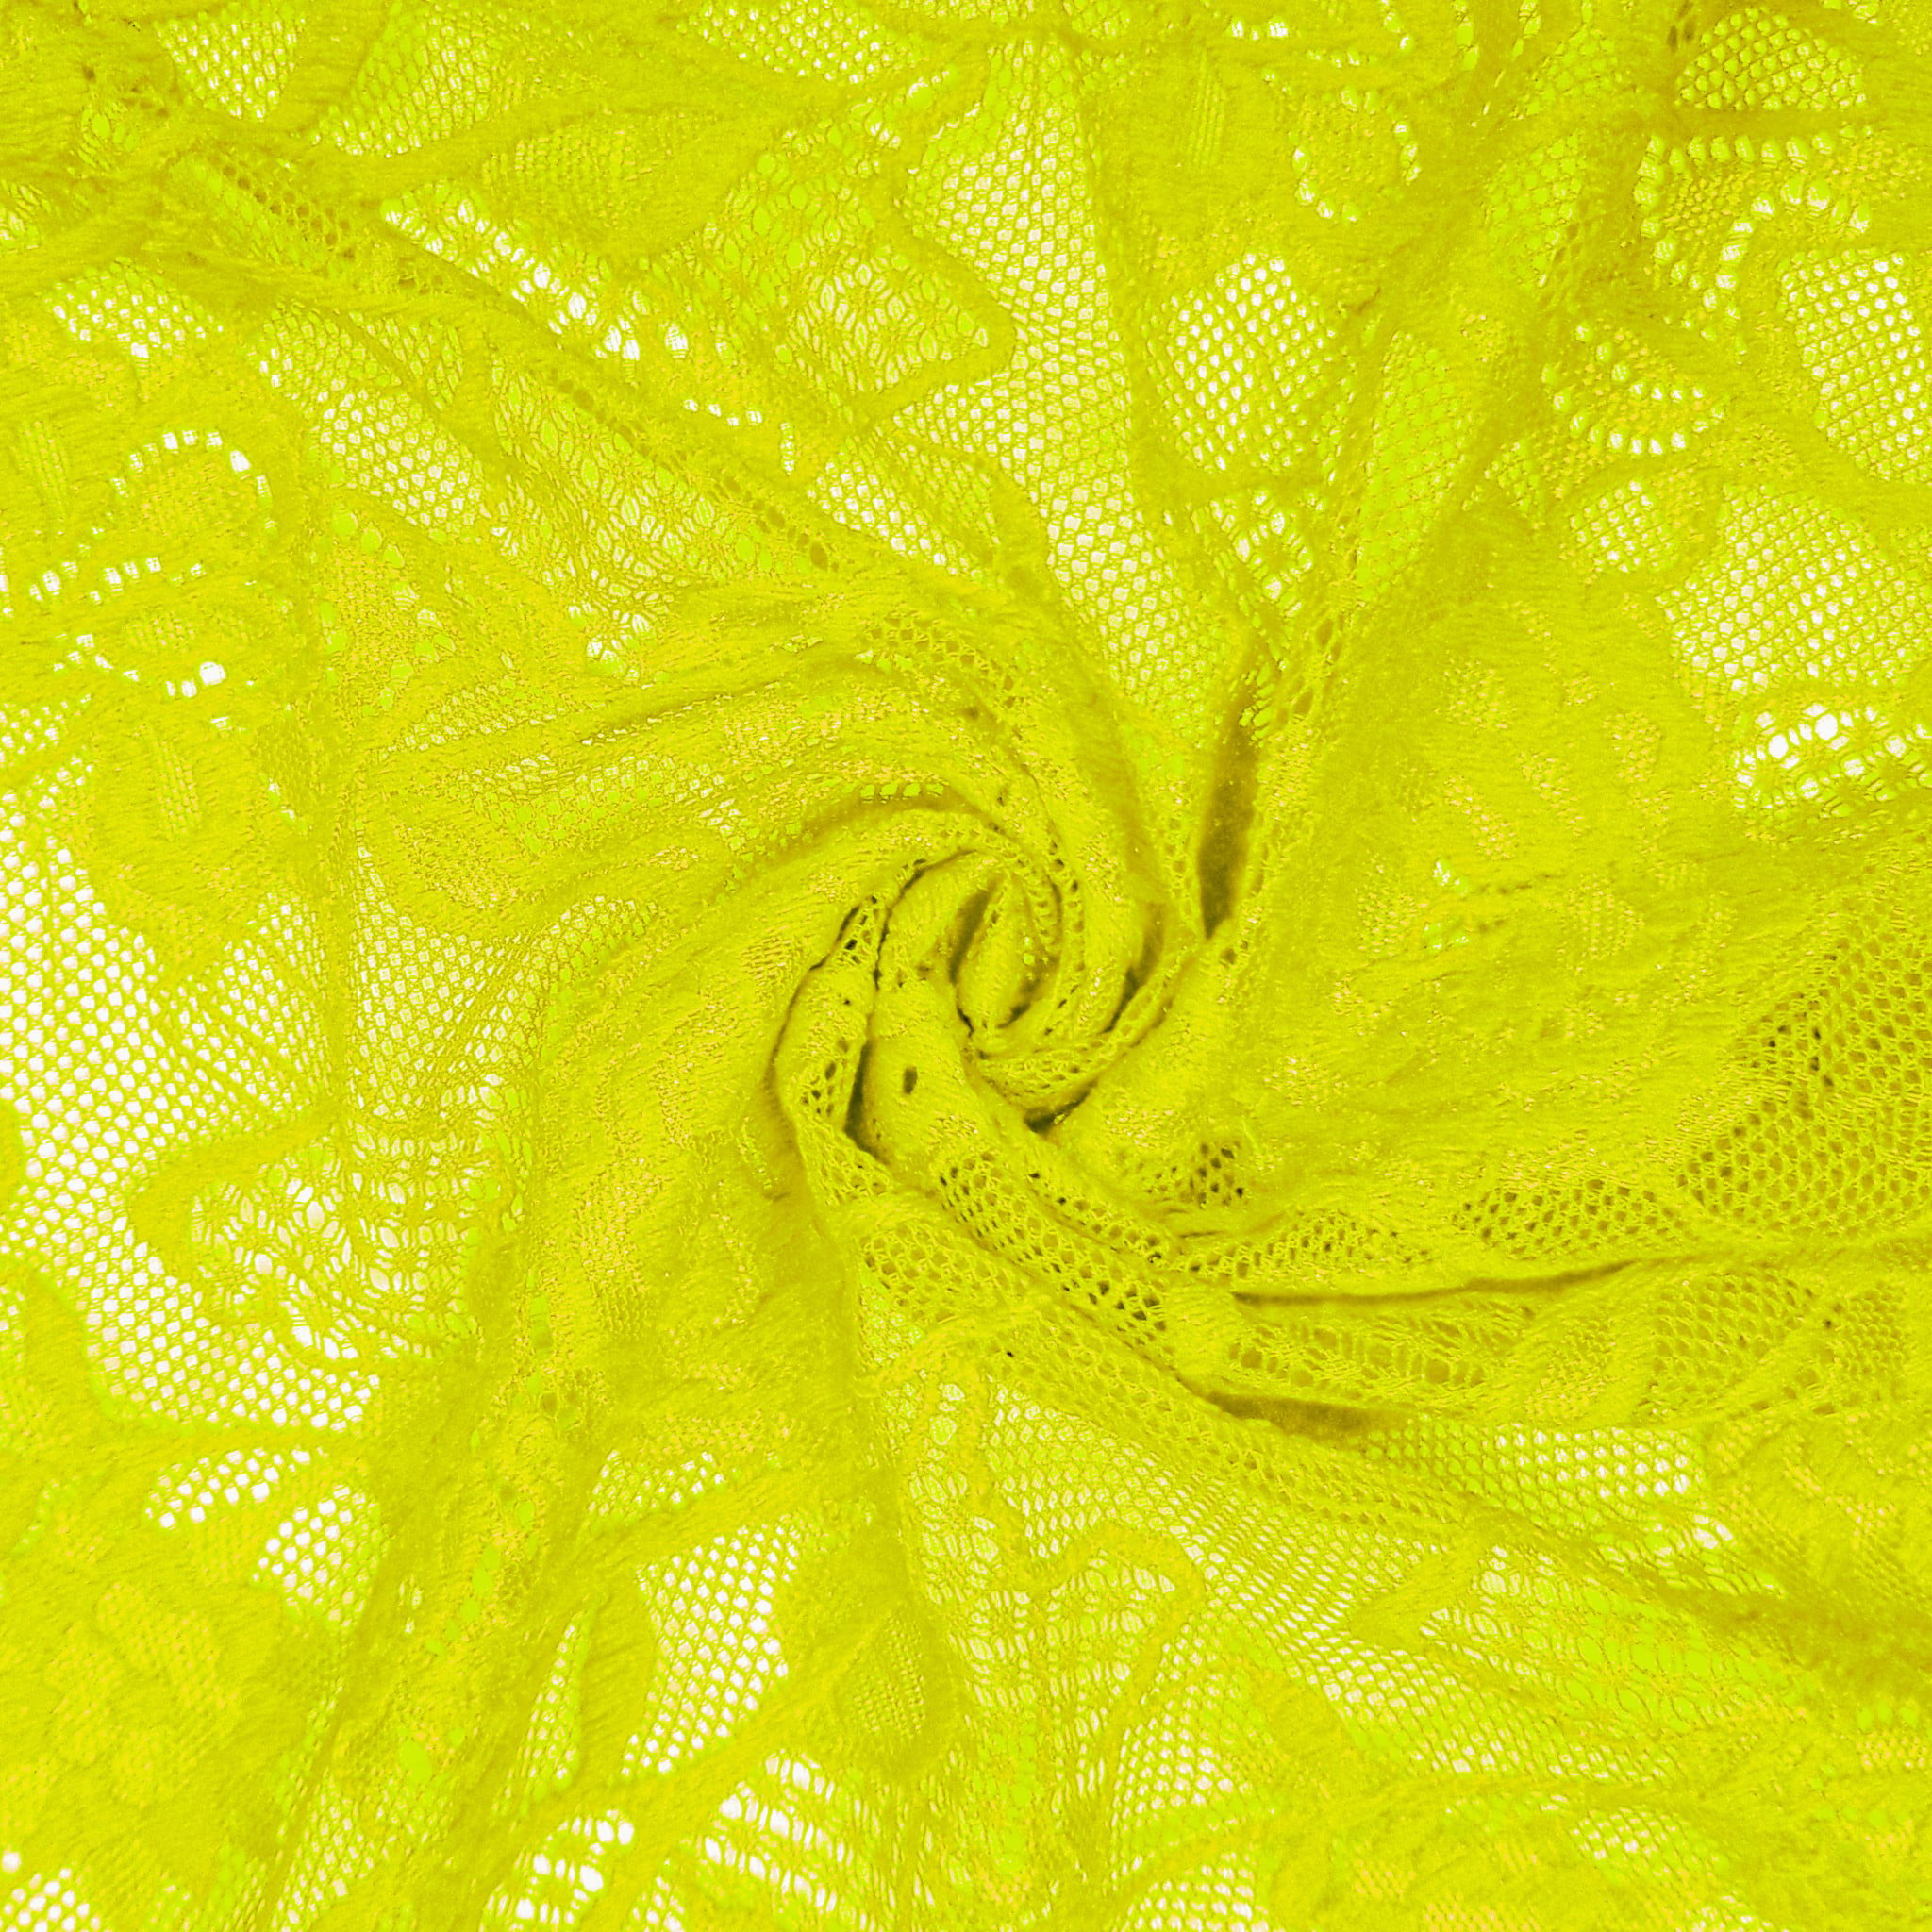 FabricLA Scallop Pattern Lace Fabrics - Nylon Spandex - Stretch Lace Fabric by The Yard - Mauve, Size: 10 Yards, Purple